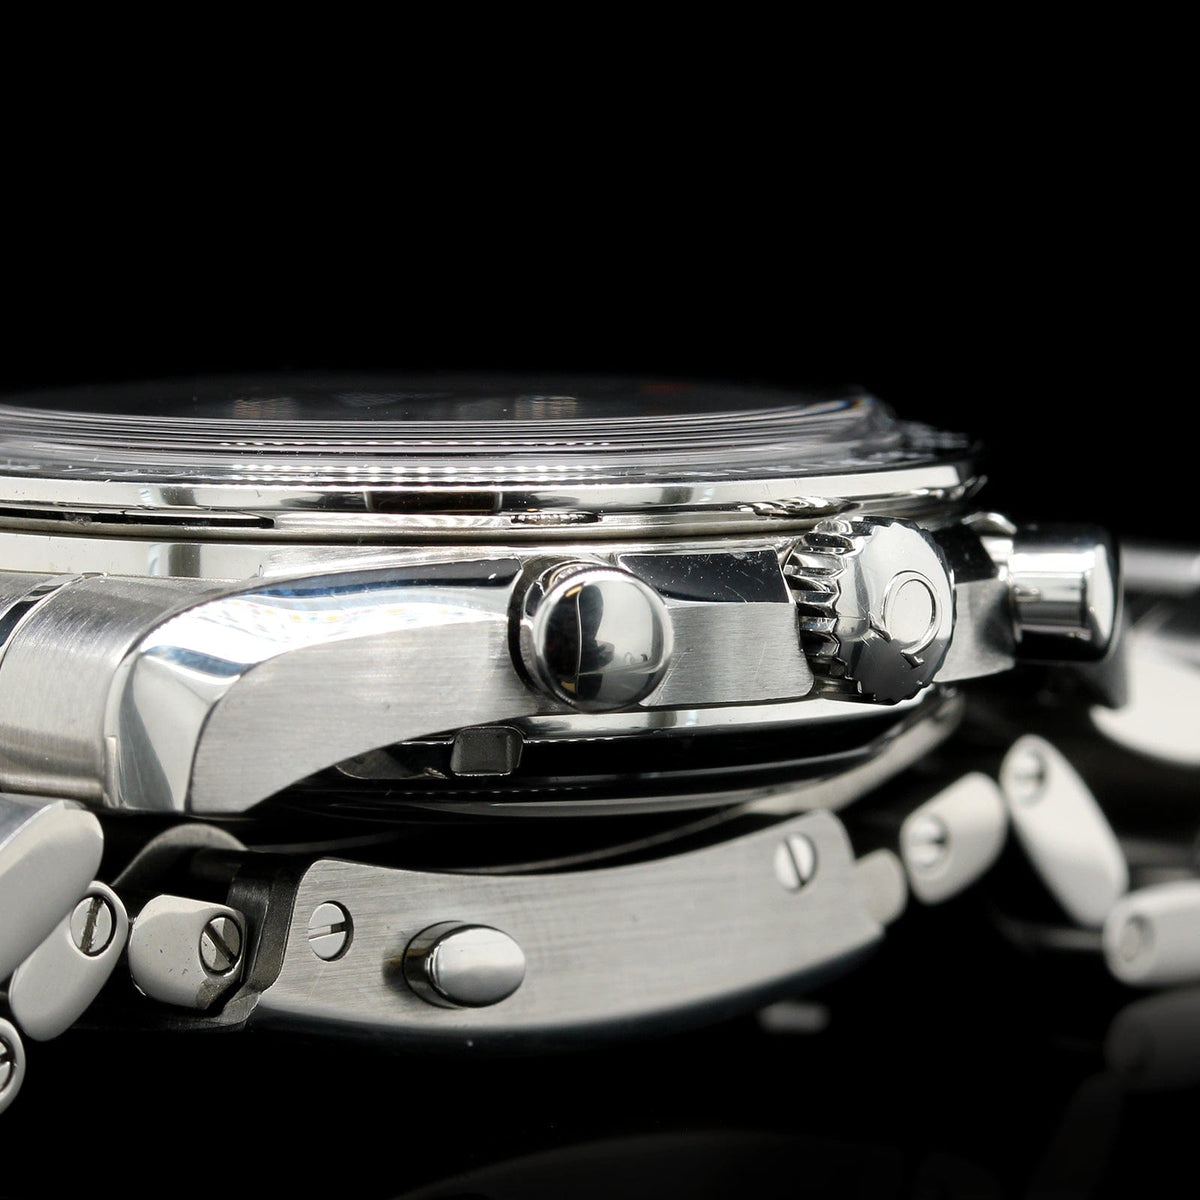 Omega Steel Estate Speedmaster Wristwatch